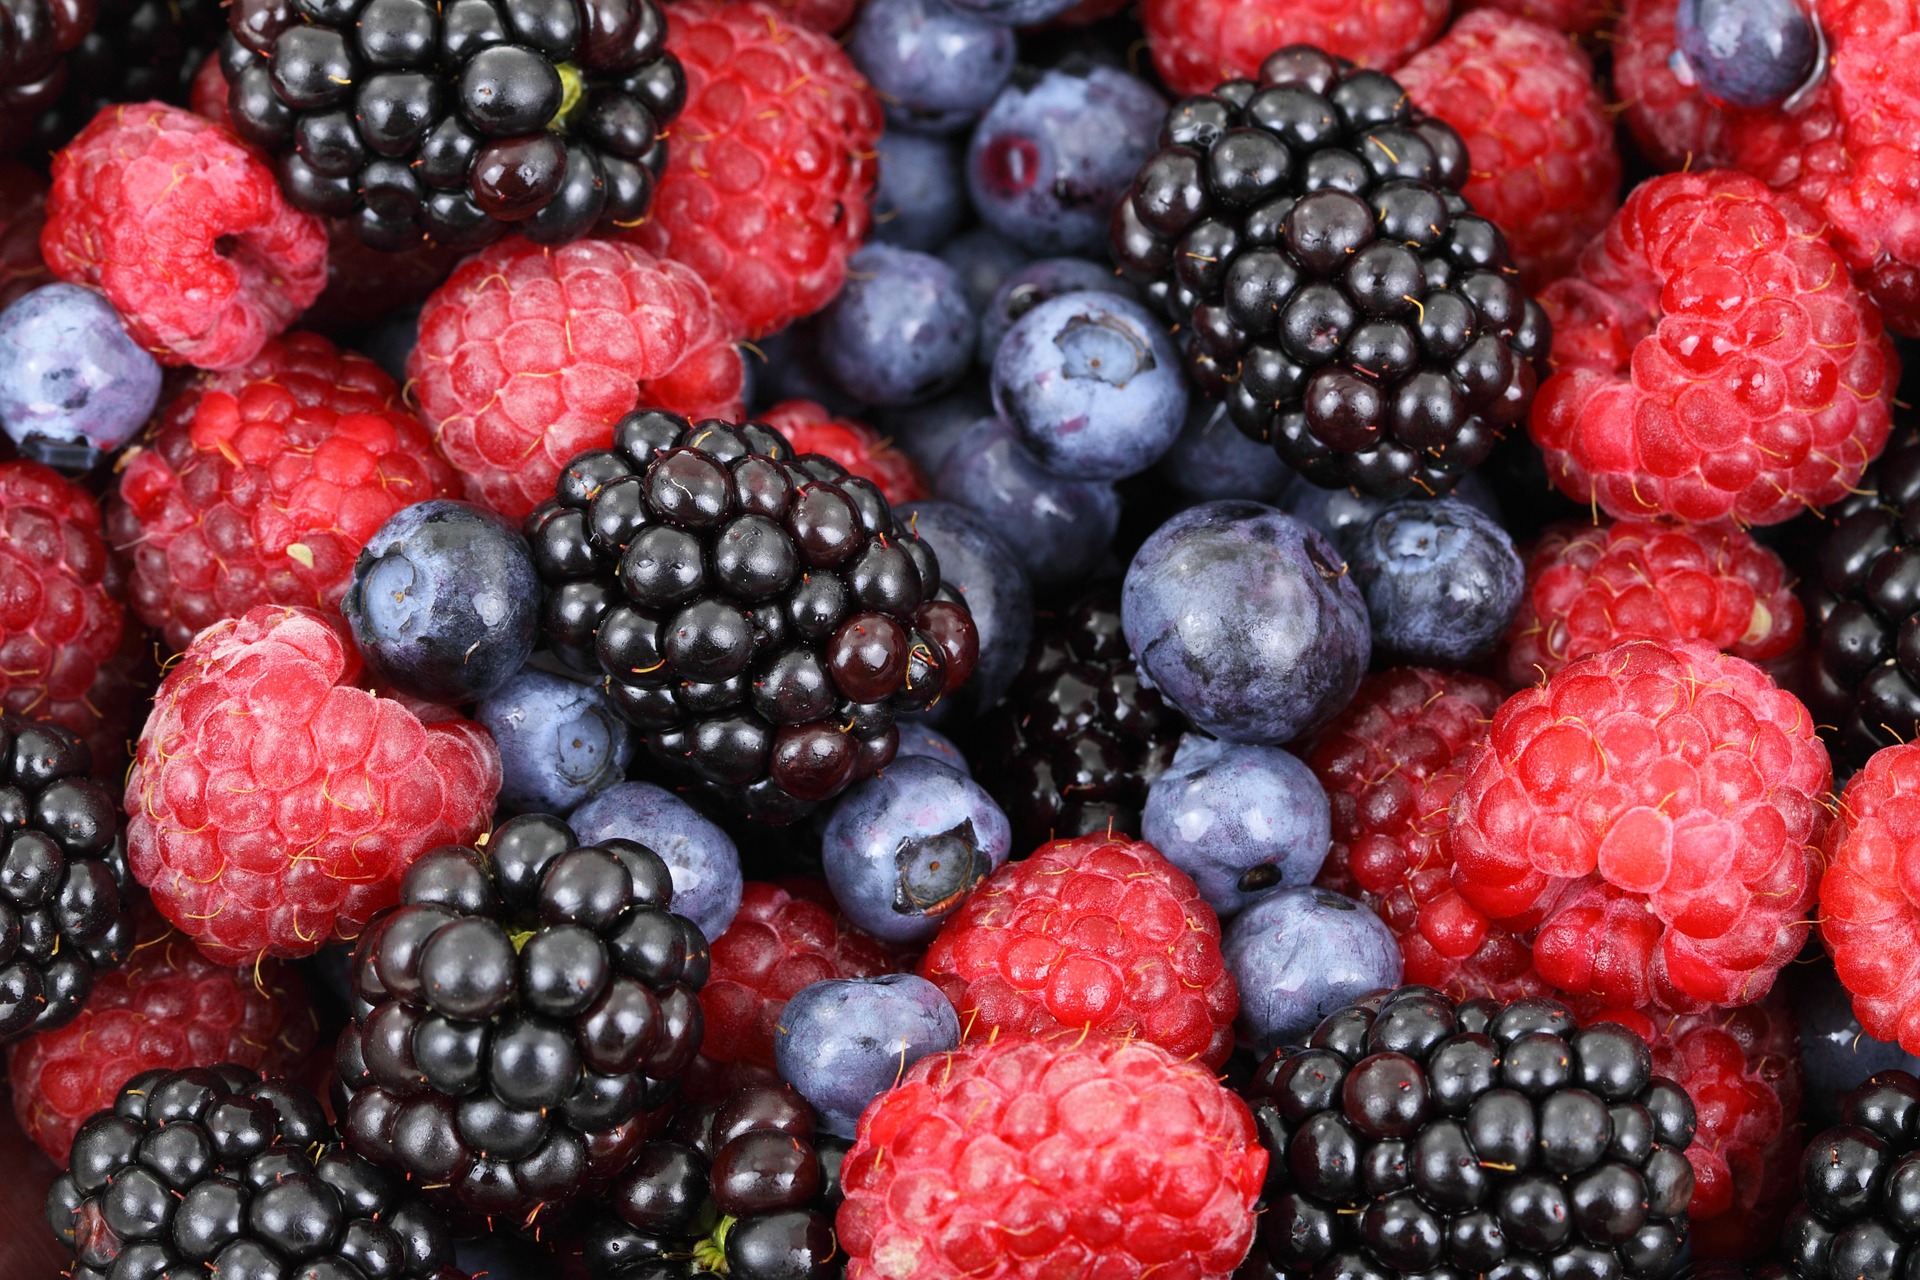 Fructe de vara cu efecte terapeutice